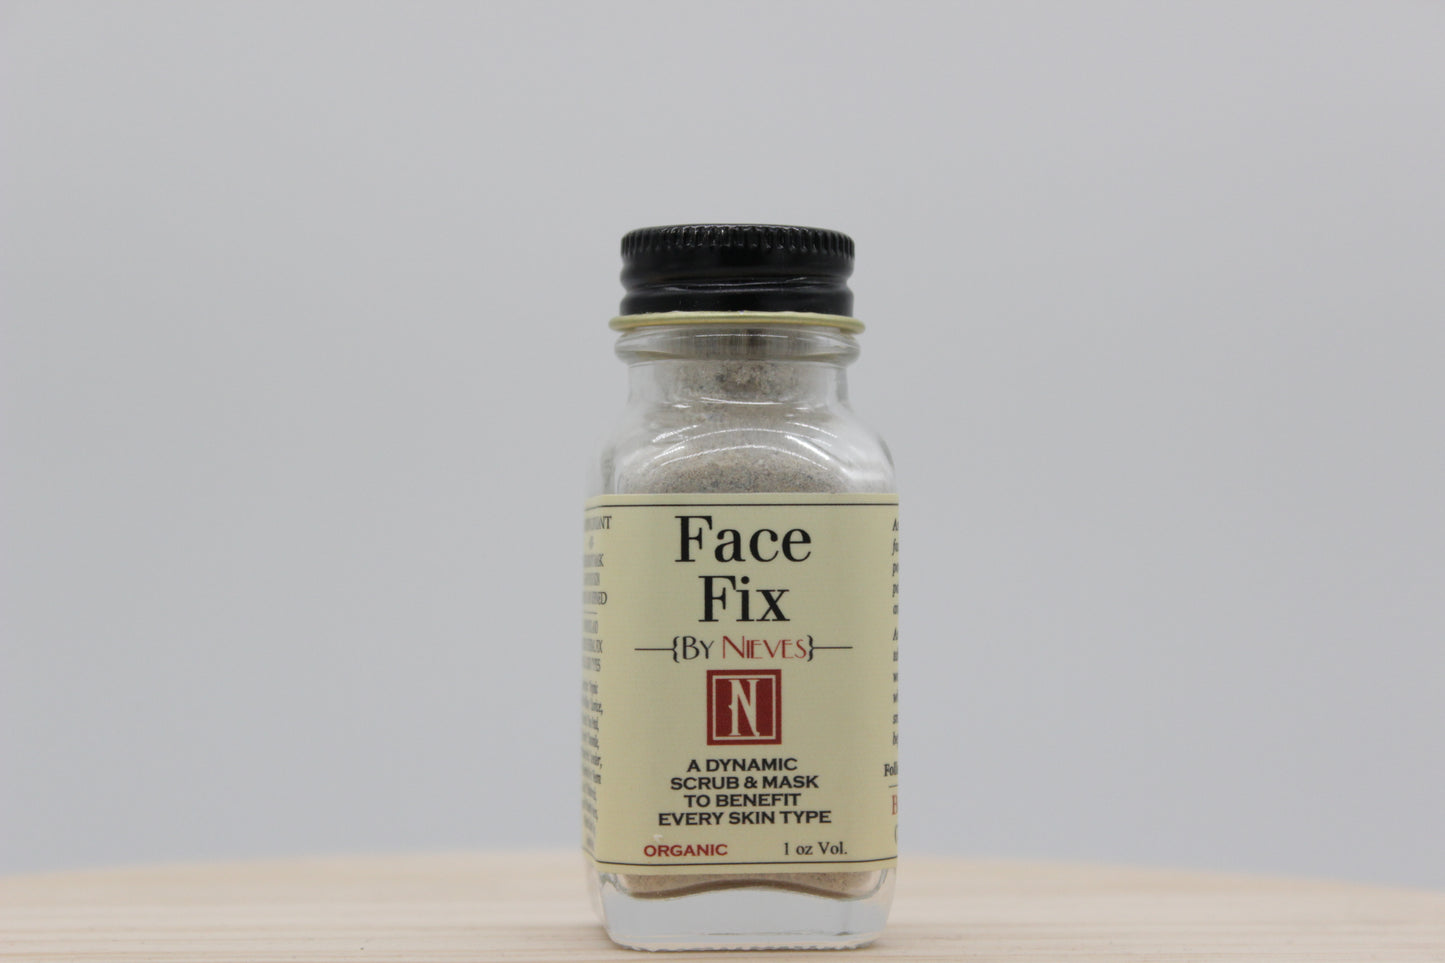 Face Fix Exfoliating Scrub + Mask